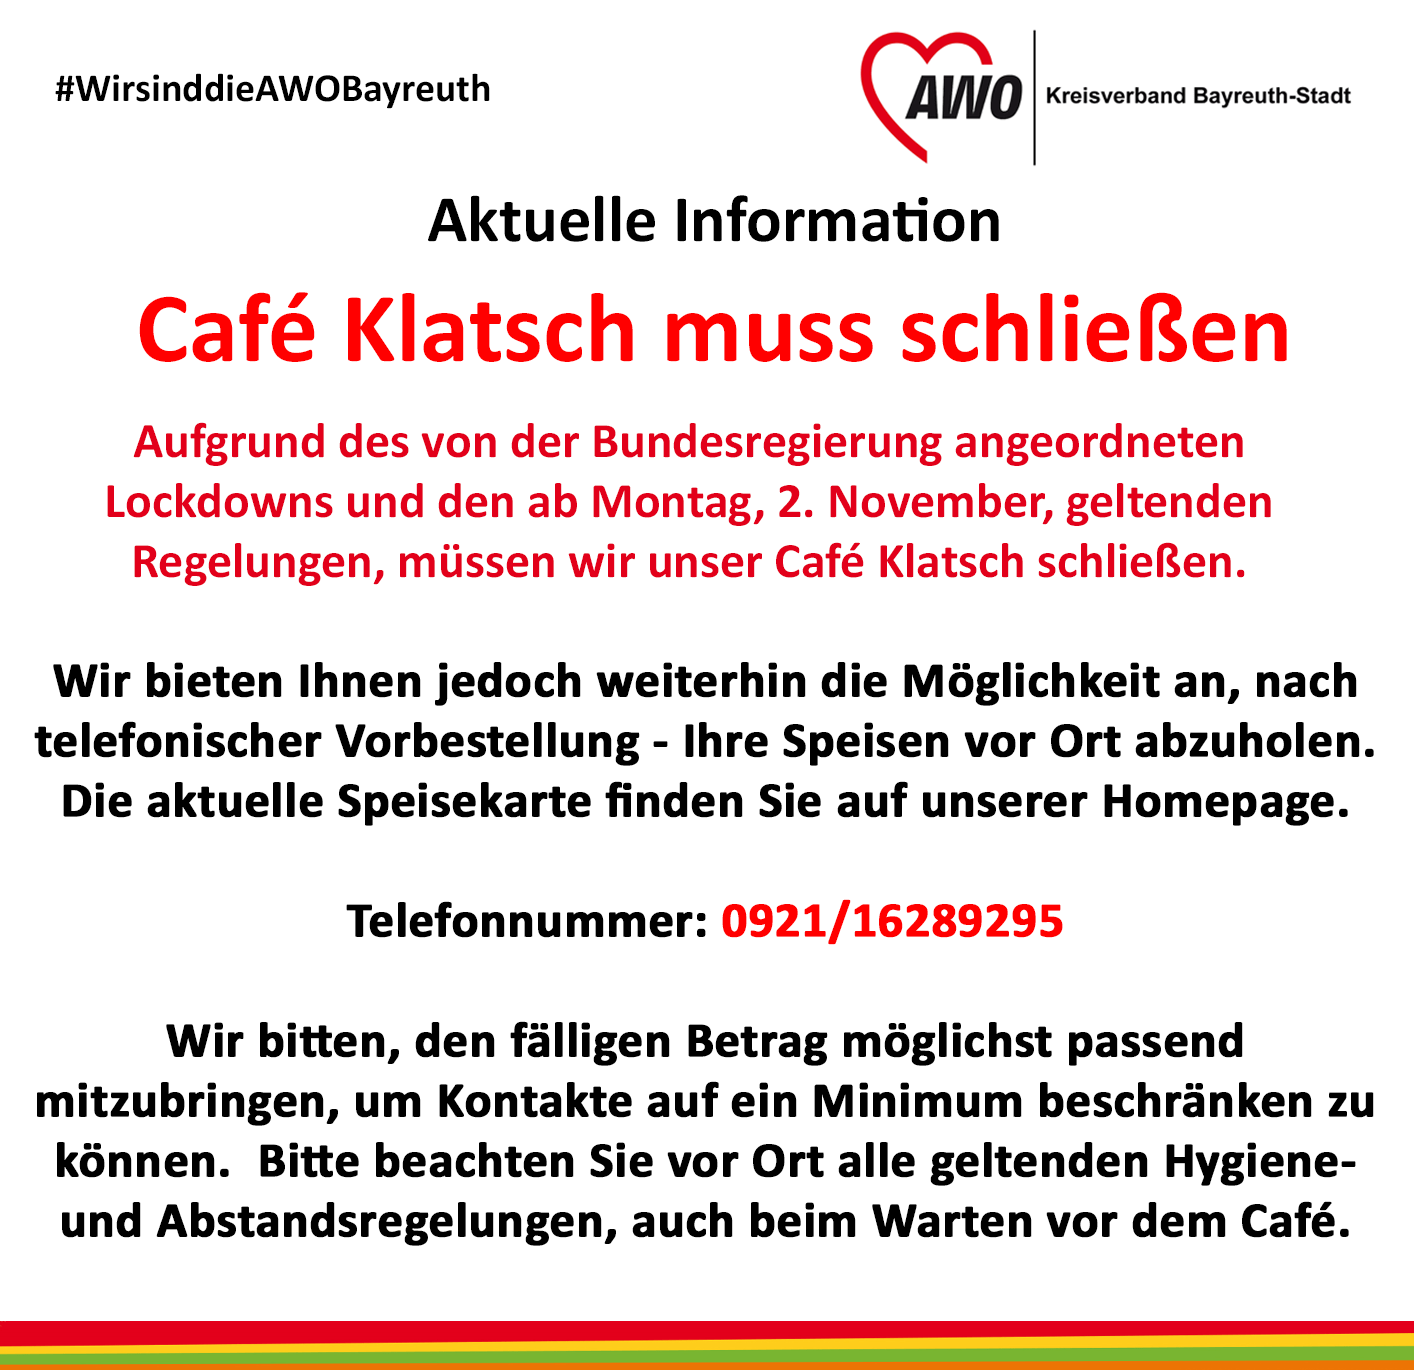 Aktuelle Information: Café Klatsch muss aufgrund des Lockdowns schließen